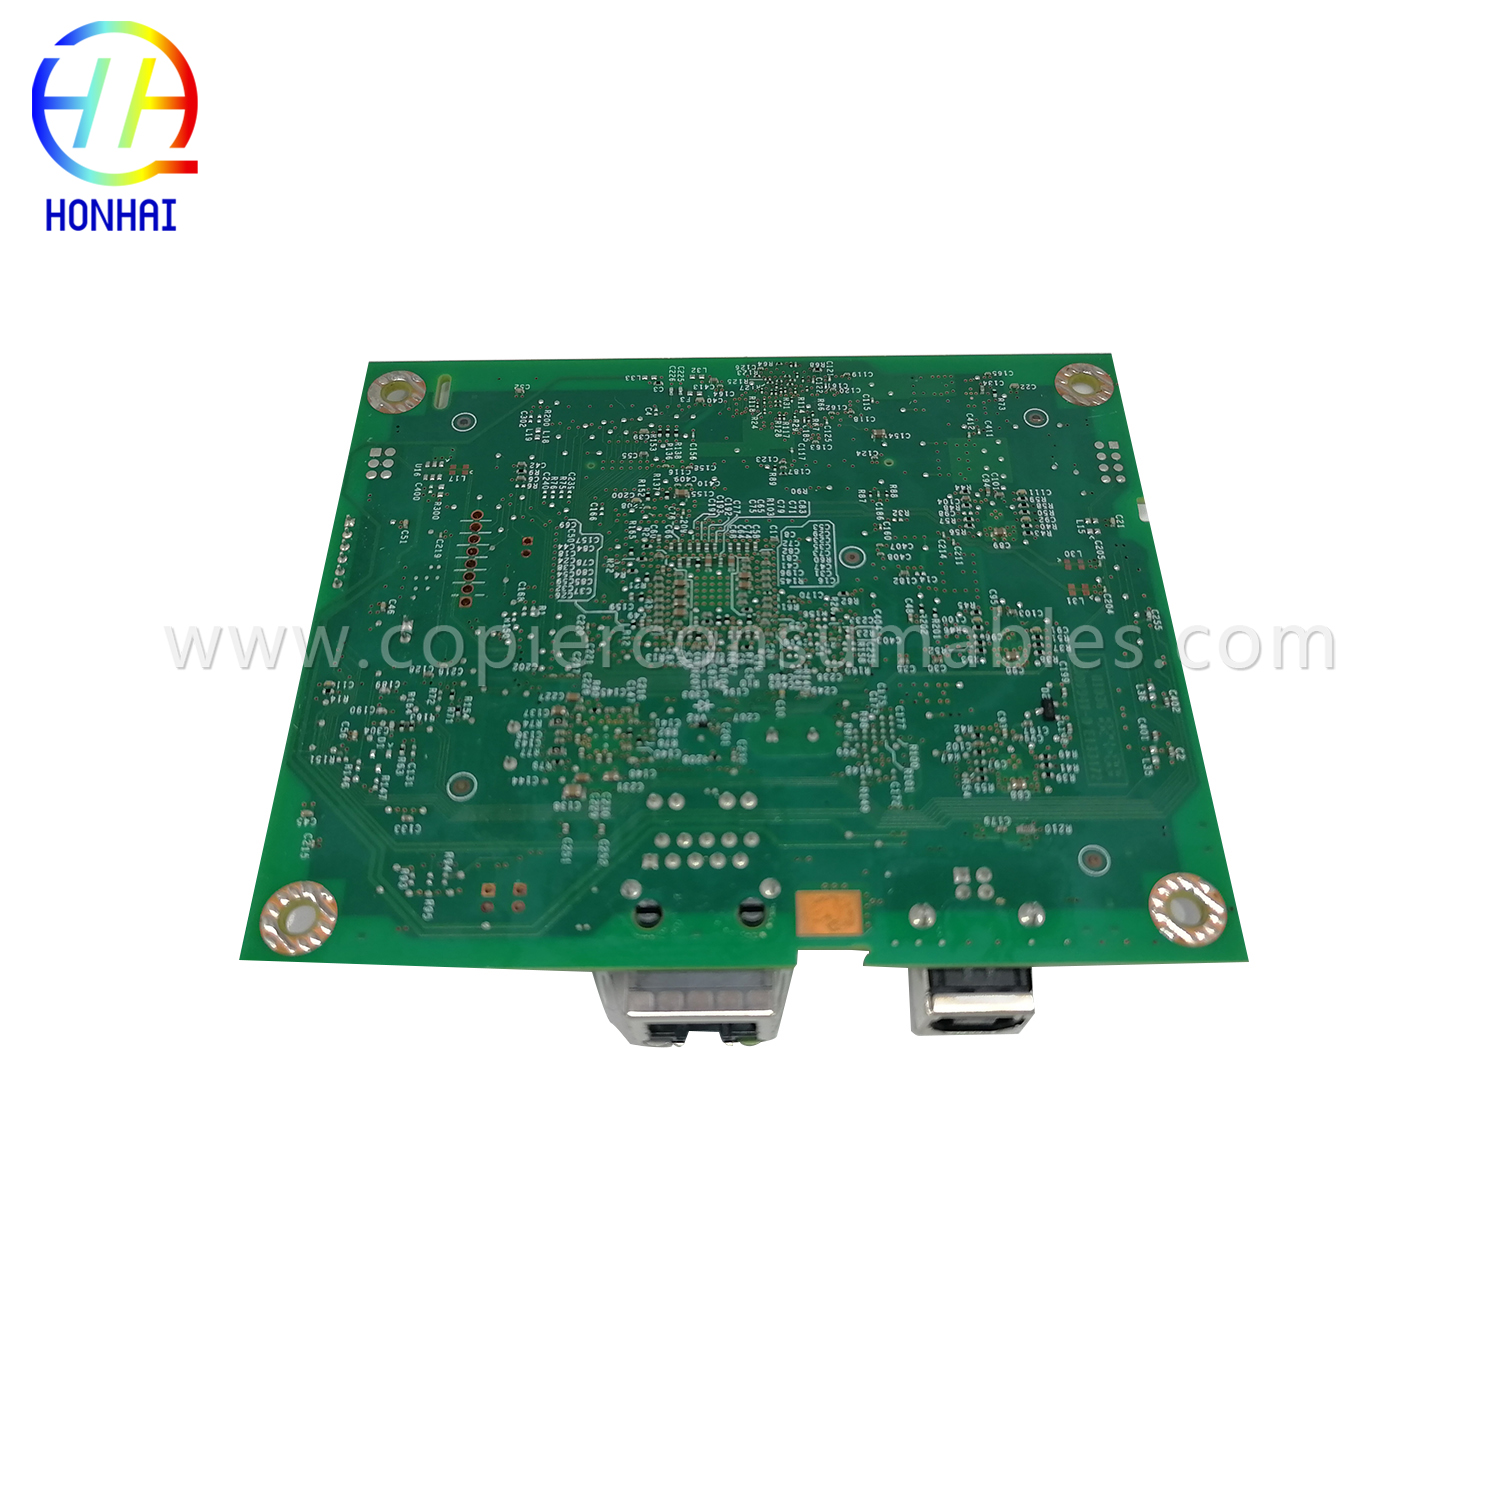 Formatter Board for HP CF149-60001 LaserJet Pro 400 M401(5) เพิ่มเติม